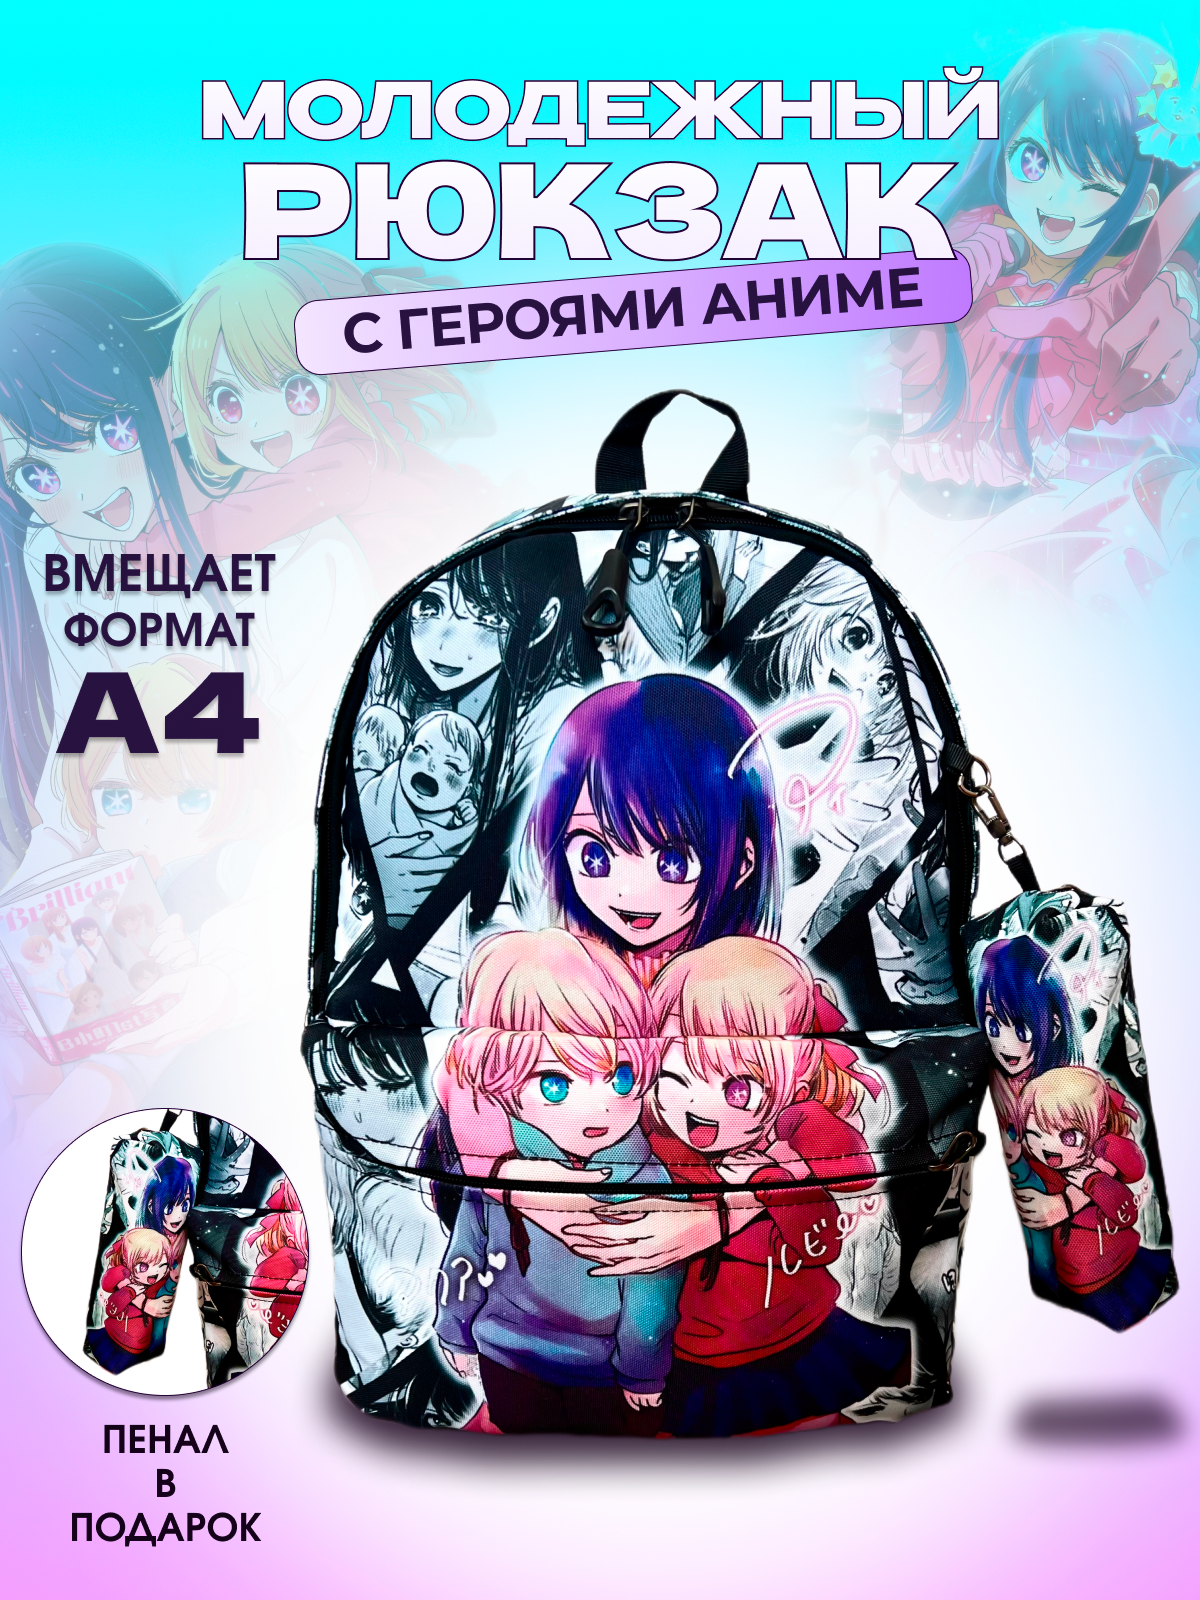 Рюкзак для школы с героями аниме